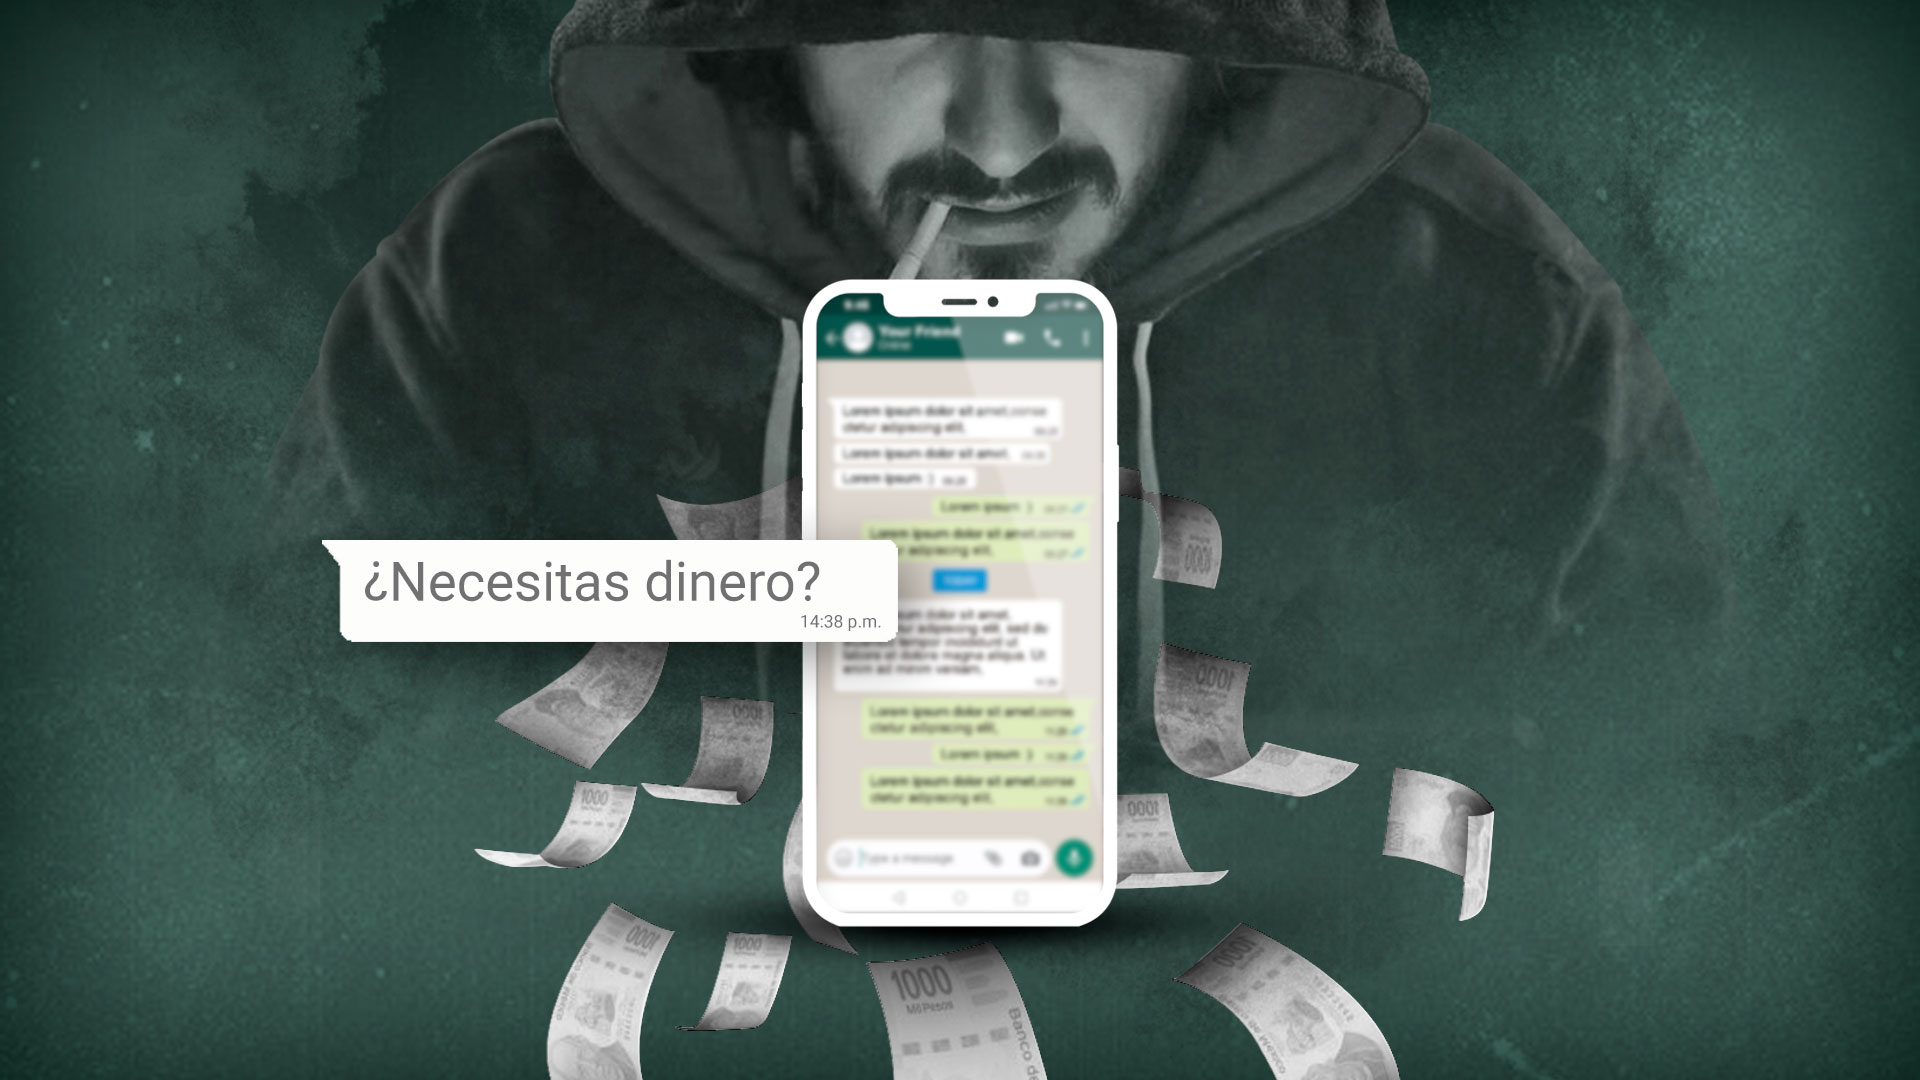 El modus operandi de este tipo de aplicaciones de préstamo fácil es amenazar por mensajes a los usuarios y llegar a la extorsión por medio de fotos privadas.
Ilustración de: Jovani Pérez de Infobae México.